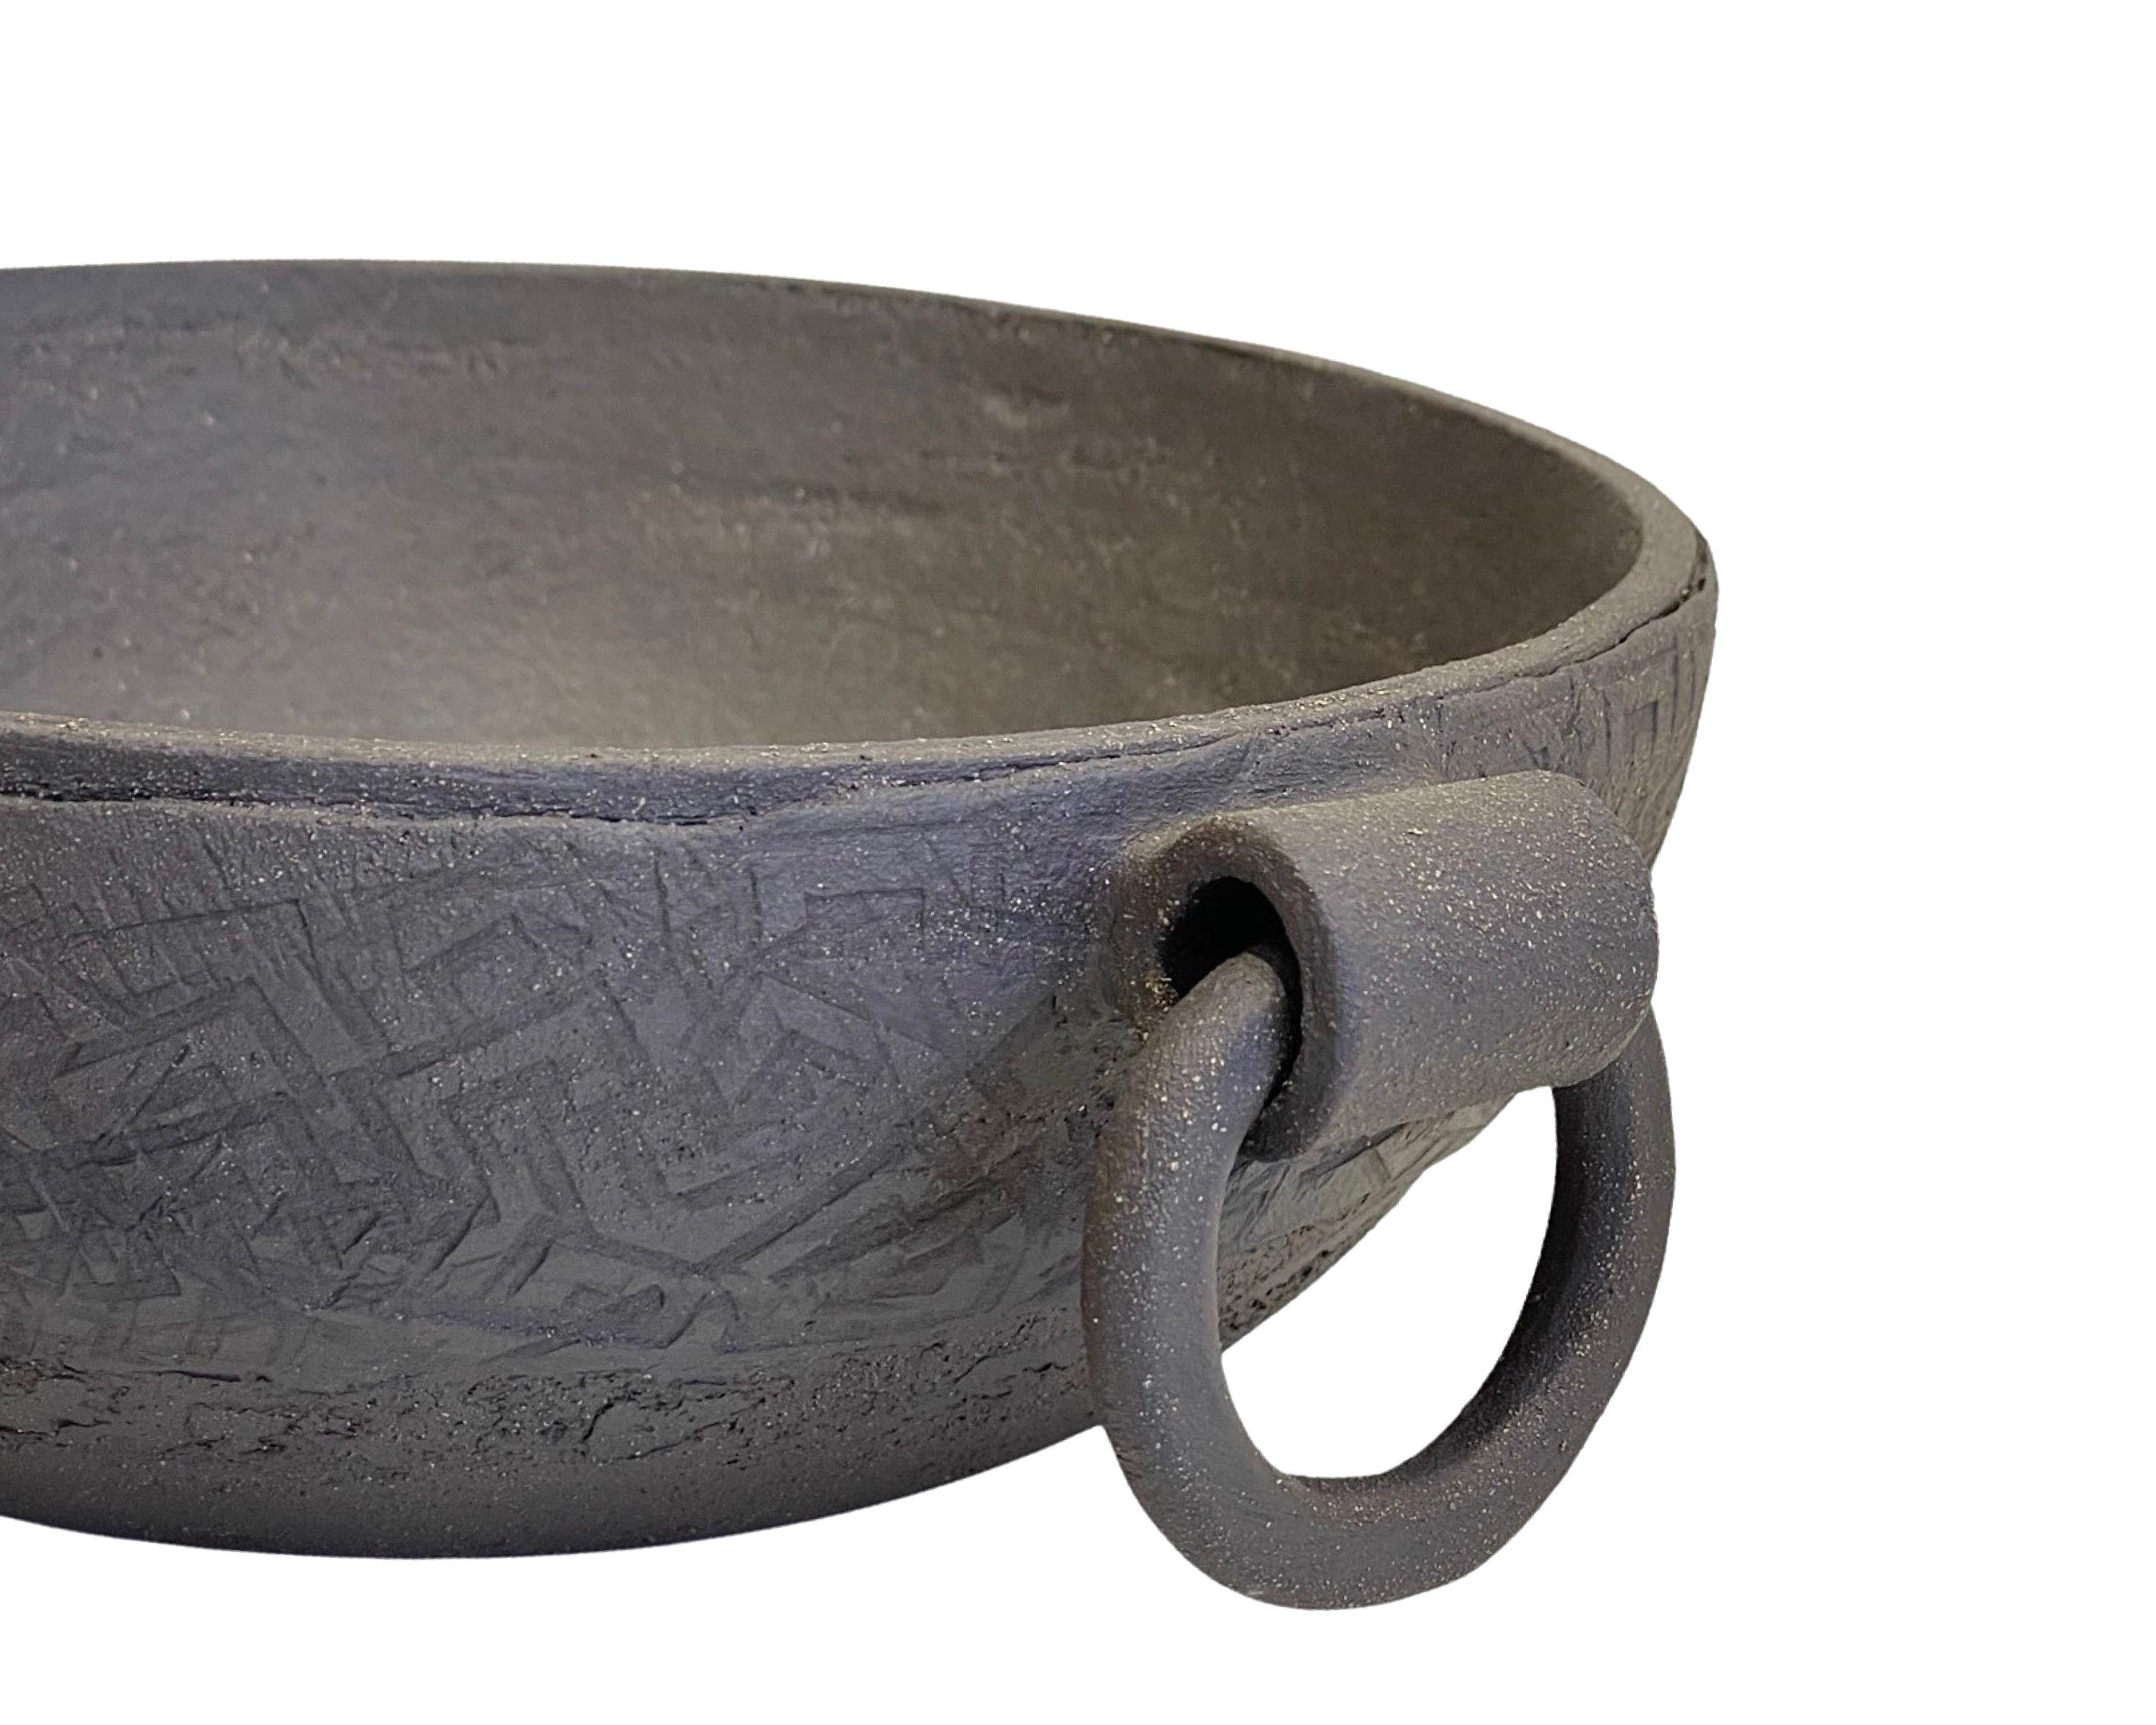 Fired Artisanal Ceramic Centerpiece, Handcrafted Decorative Bowl, Dark Brown